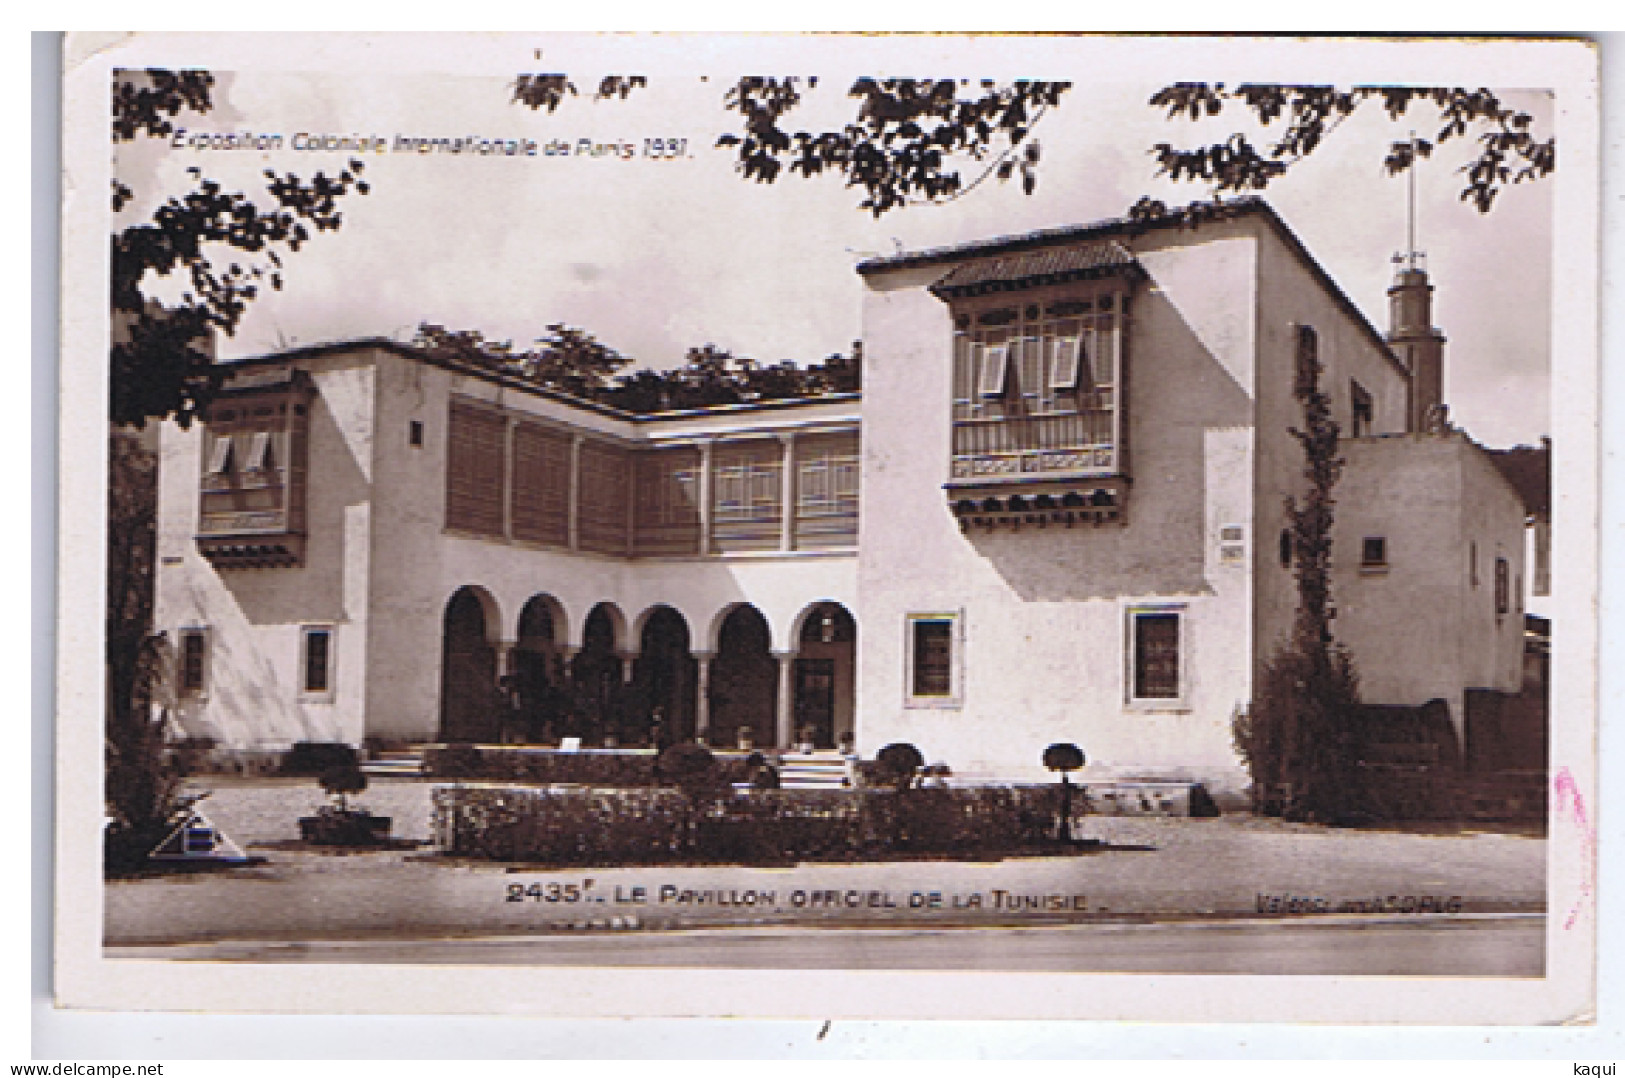 PARIS 1931 - Exposition Coloniale Internationale - Le Pavillon Officiel De La TUNISIE - Braun & Cie - N° 2435 F - Expositions